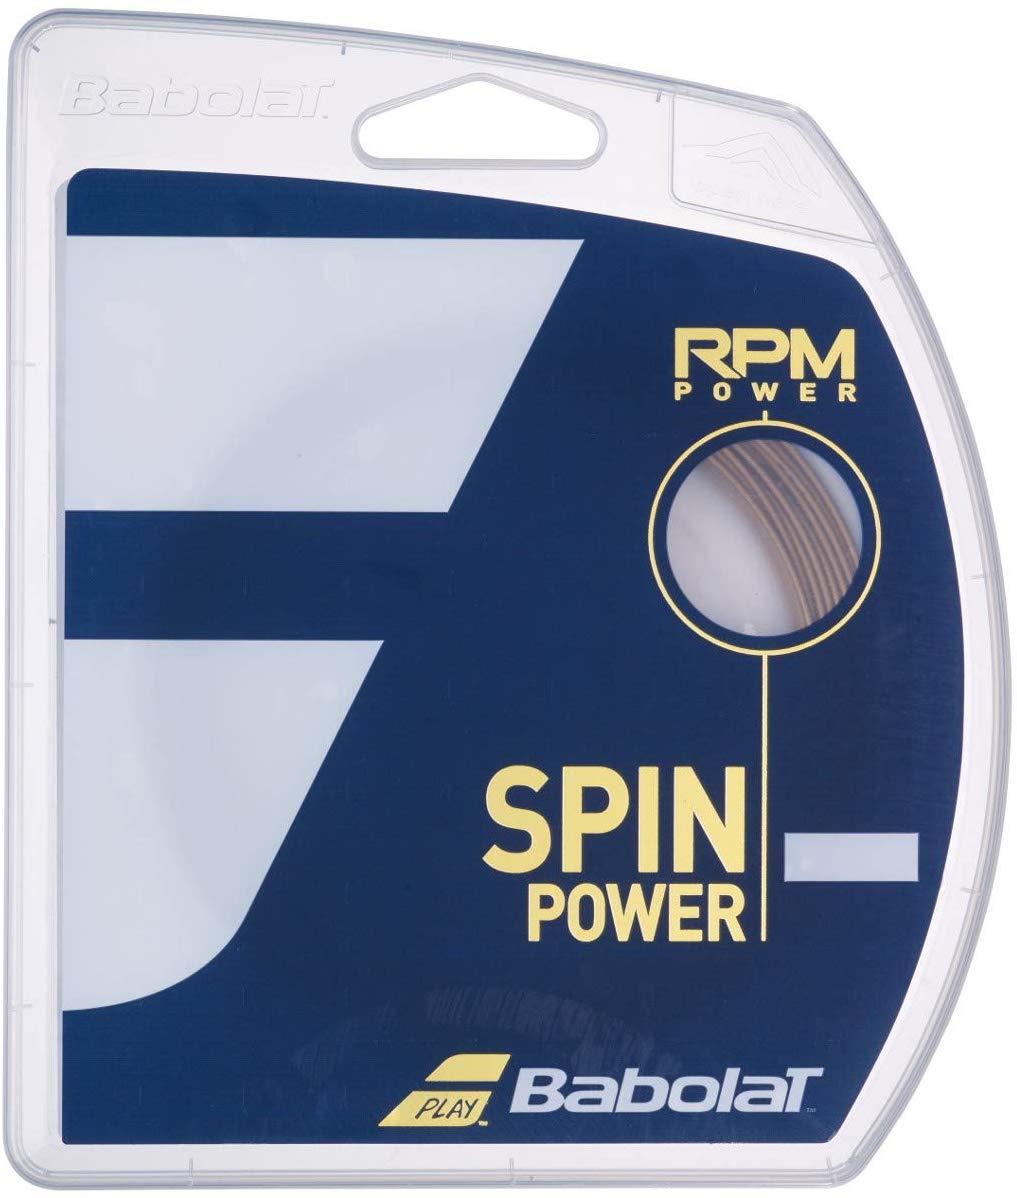 【NEW】BabolaT社のNEWストリング RPM POWER 125が入荷しております。